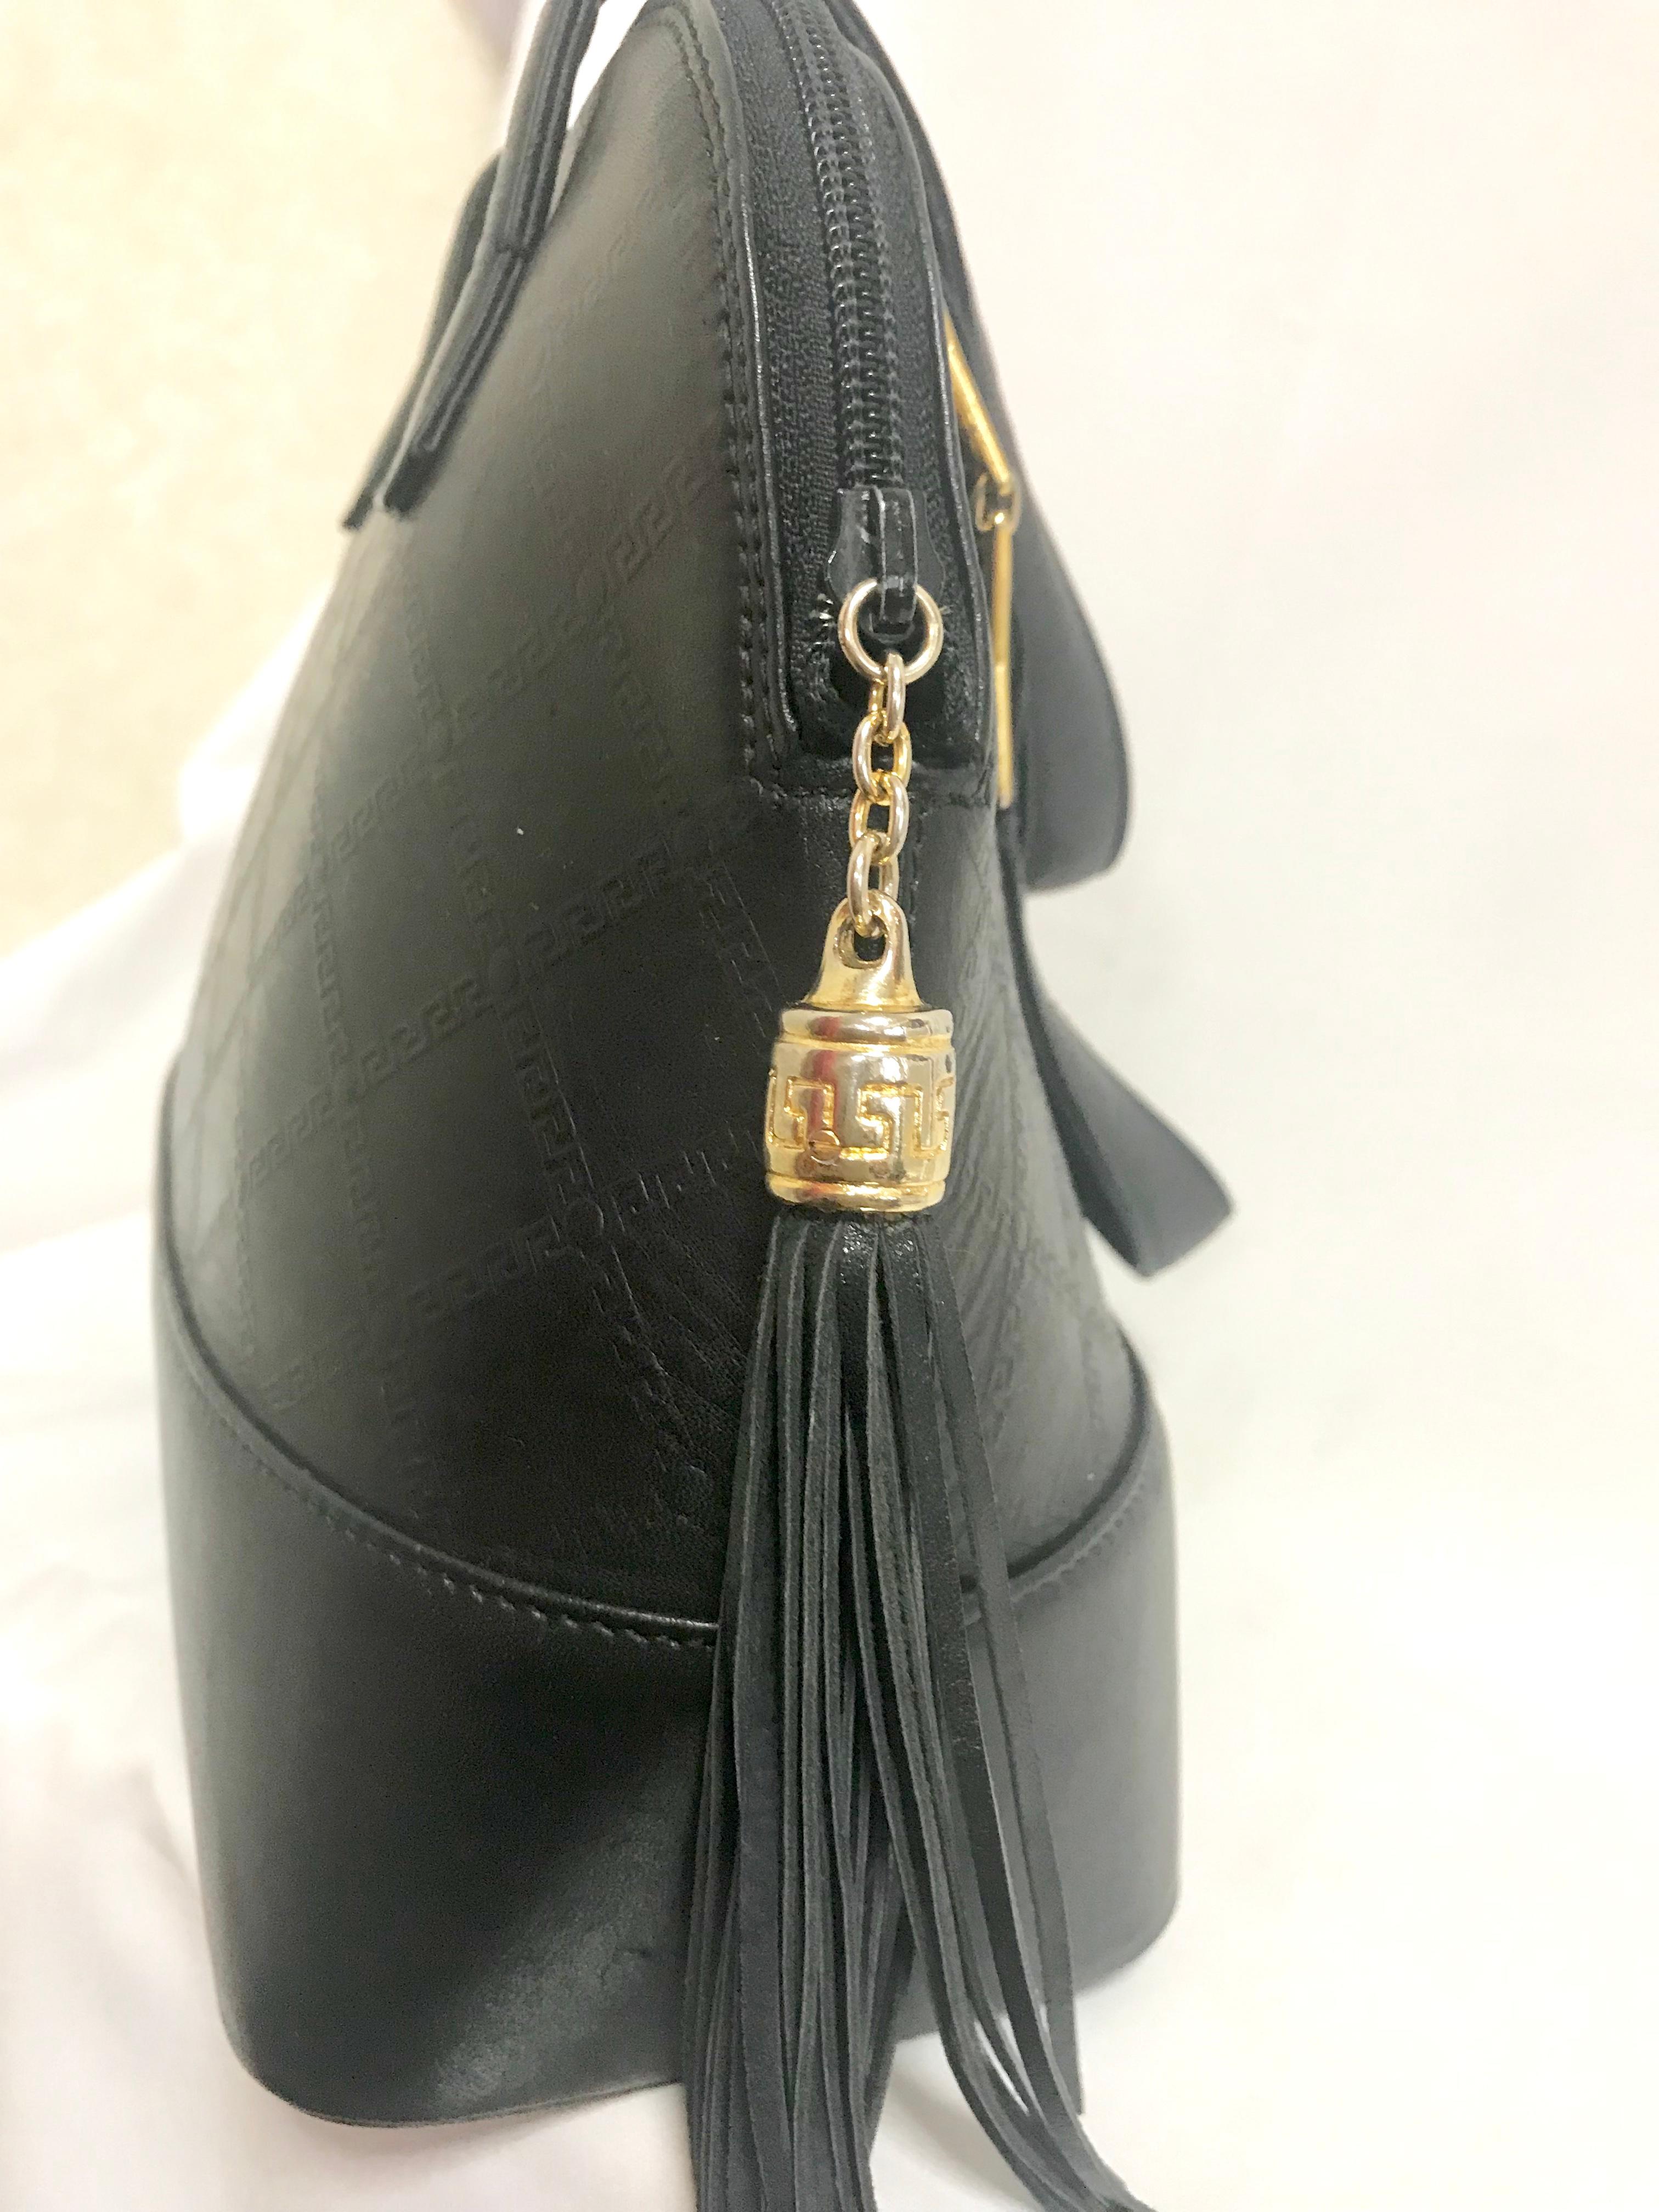 Gianni Versace Vintage black bolide shape bag with a tassel and sunburst motifs  For Sale 3